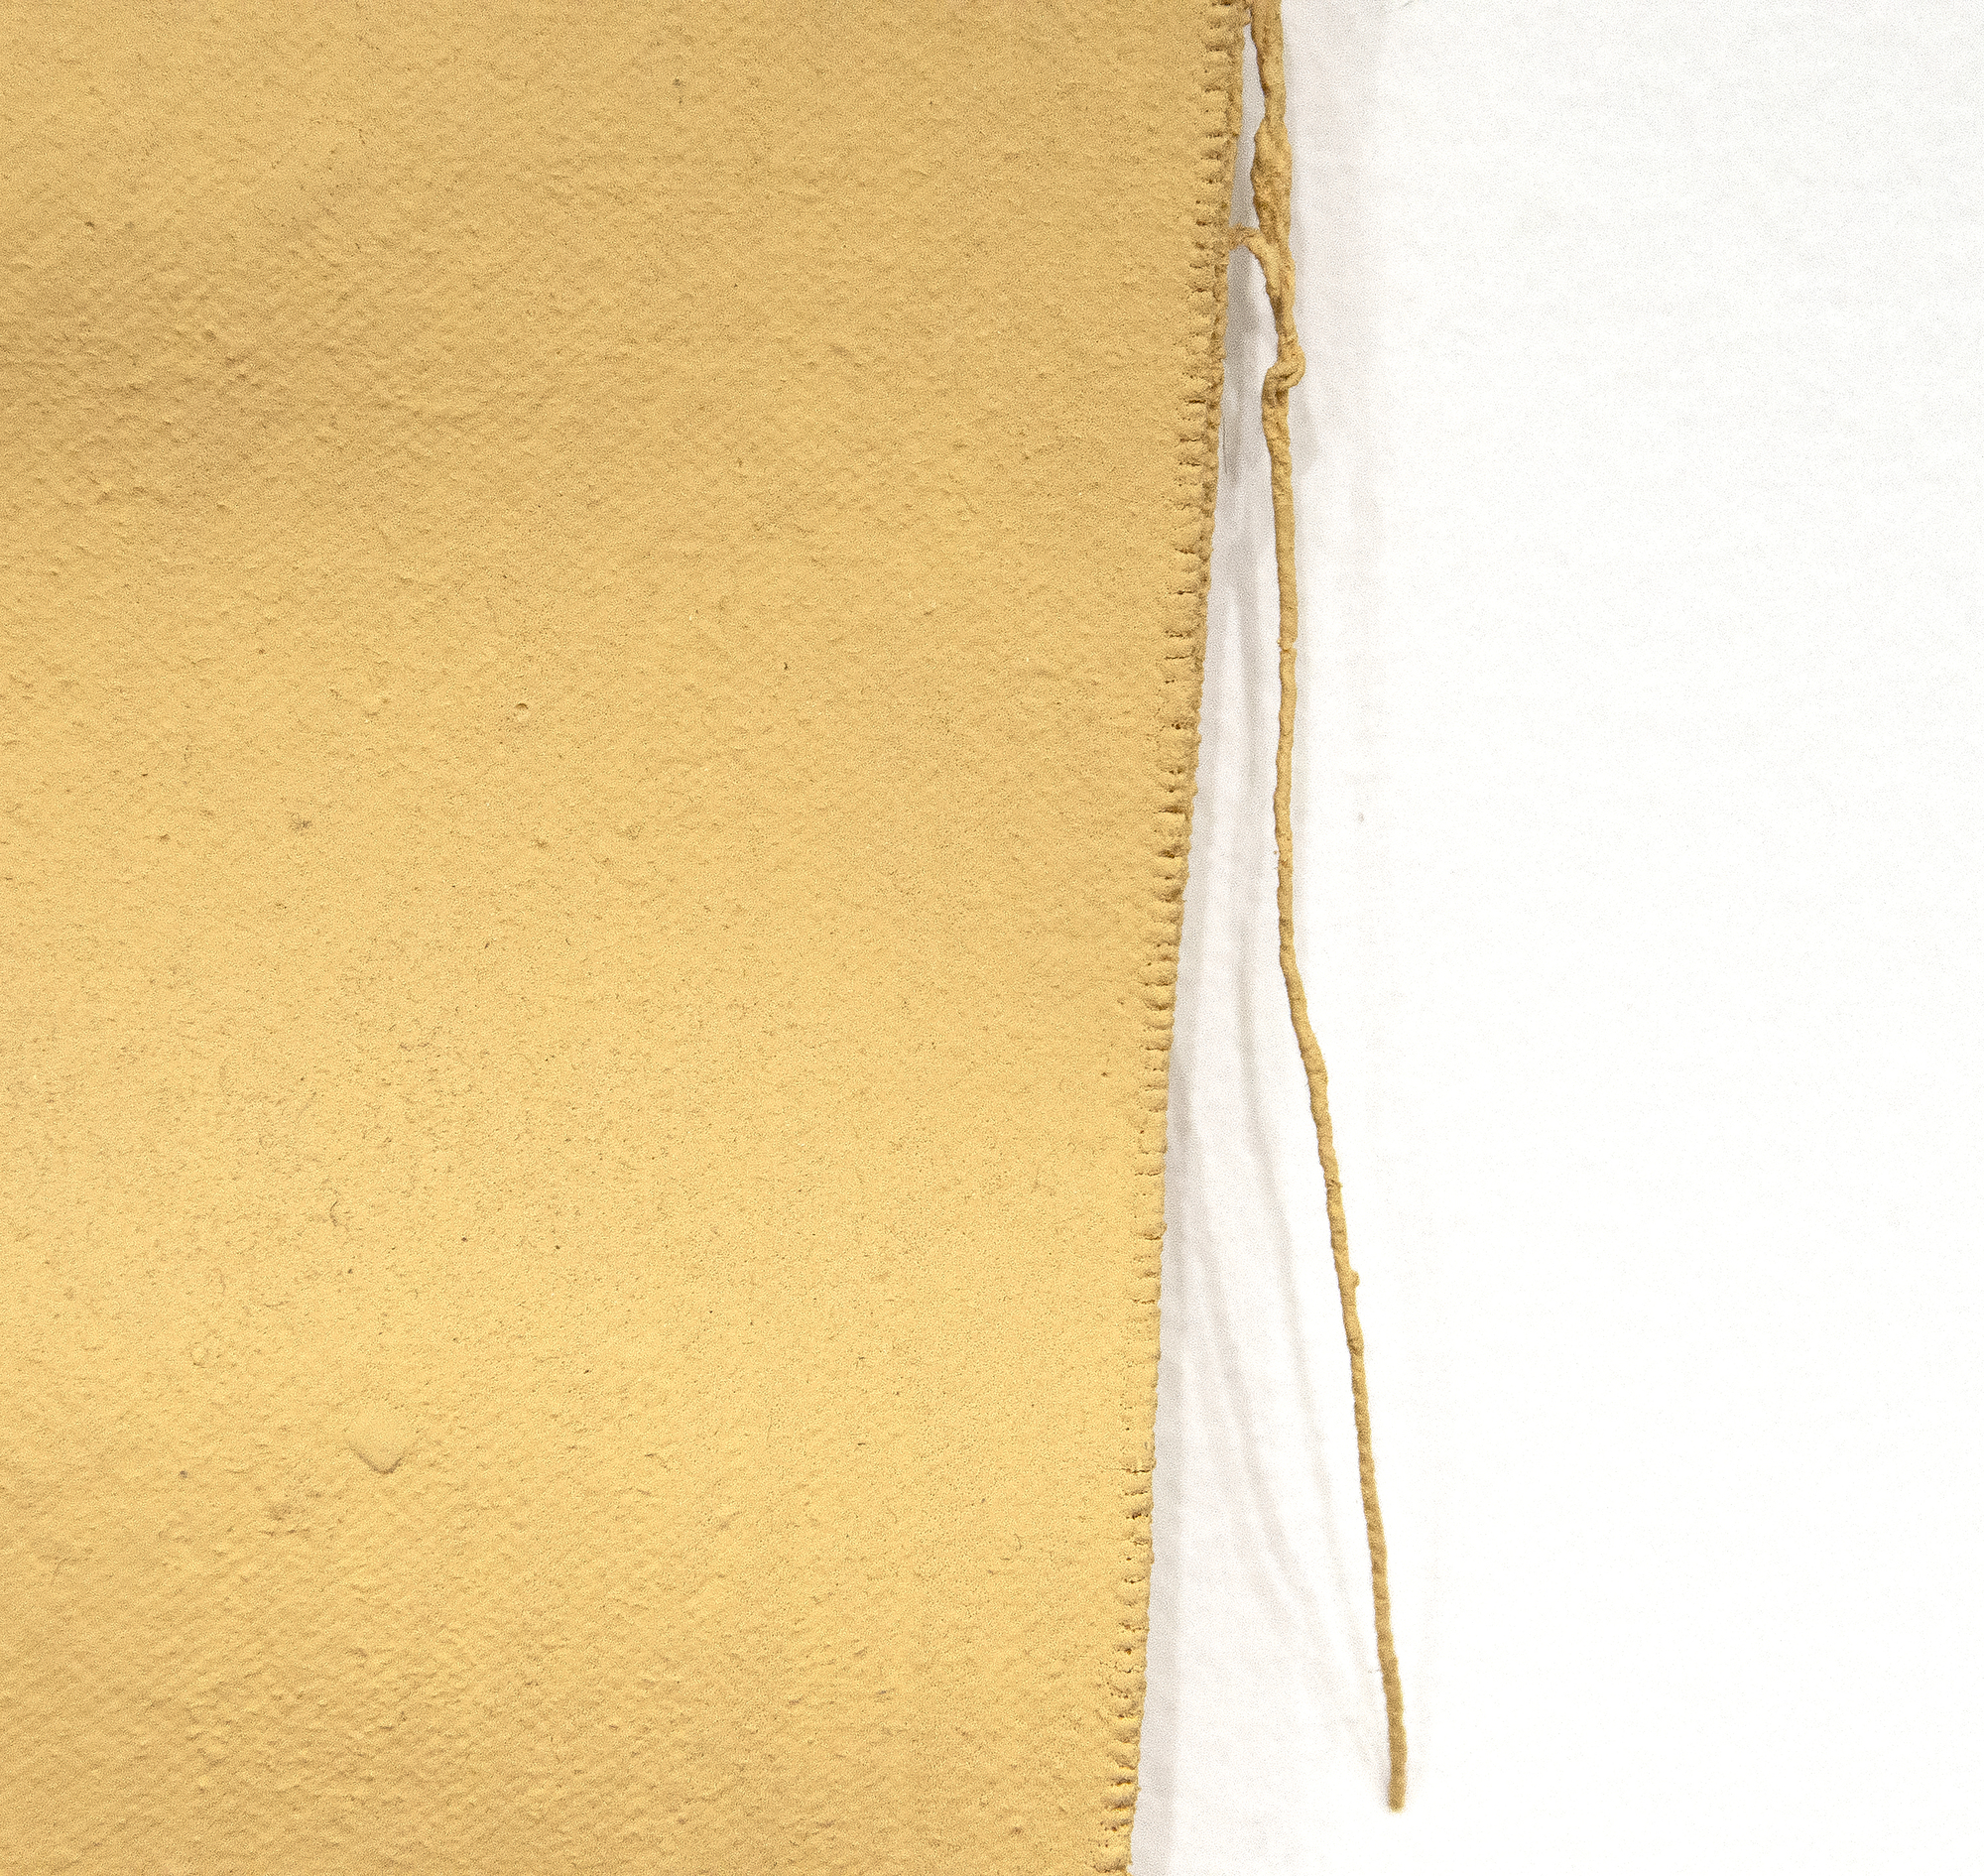 Richard Tuttle es un artista postminimalista estadounidense fundamental. La obra de Tuttle es conceptual y meditativa, cruzando los límites de la escultura, la pintura y la poesía, y a menudo desafiando al espectador. Untitled (Cloth and Paint Work #2) de 1973, un período crucial en la carrera del artista, evoca el minimalismo anterior de su carrera mientras que empuja hacia el arte conceptual basado en lo material. En la obra rinde homenaje a los readymades de Marcel Duchamp. Los textiles, como en esta pieza, juegan un papel importante en su obra y se convierten en sitios en los que enfocar la actuación, el compromiso y el significado.